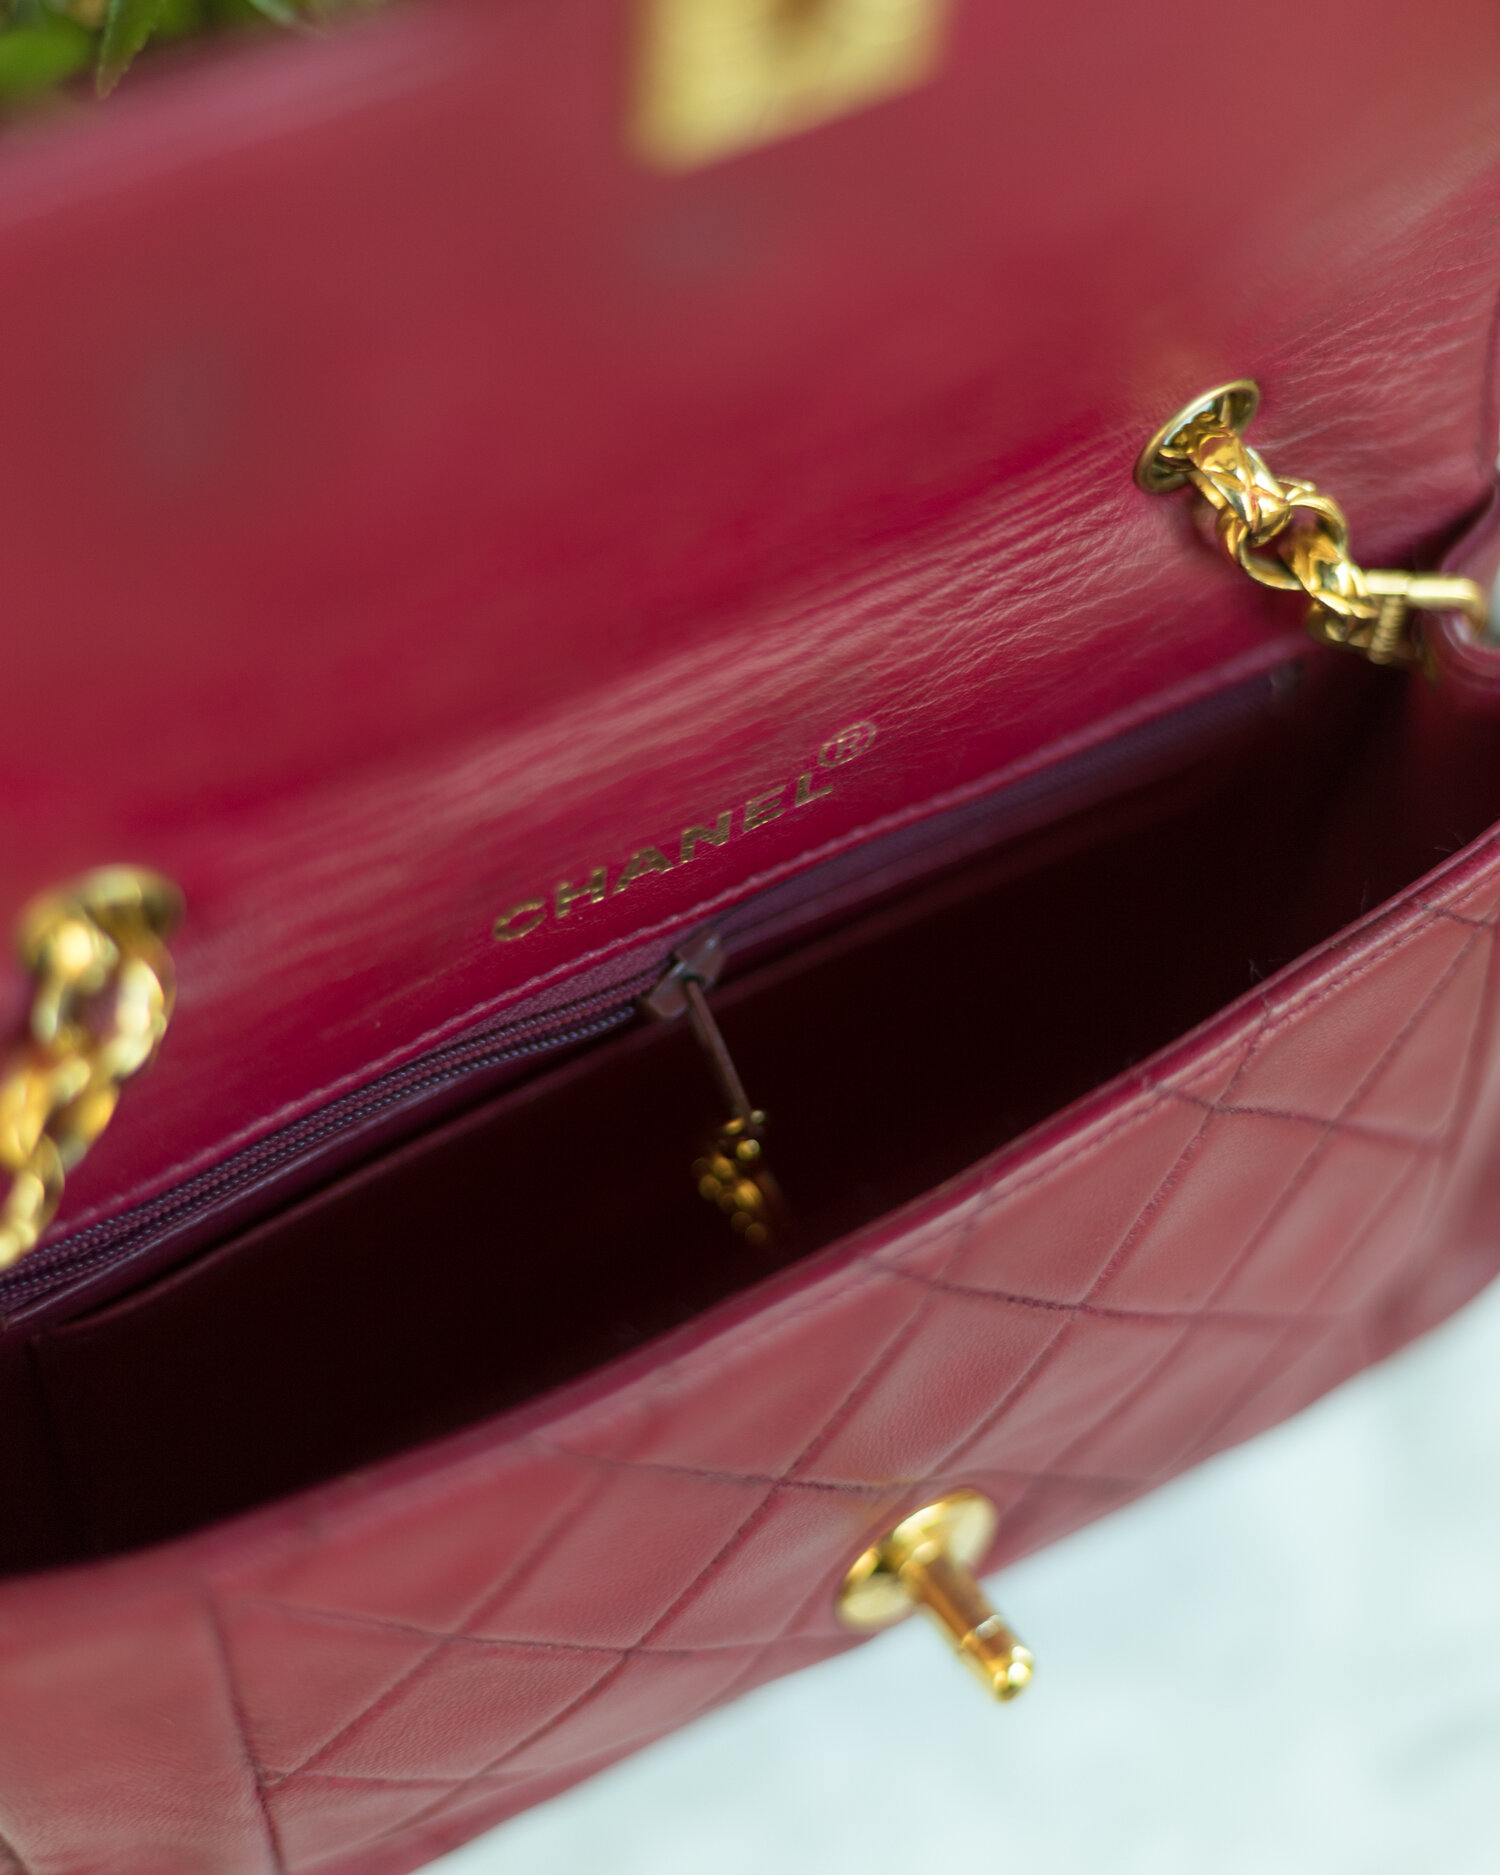 pink leather chanel bag vintage